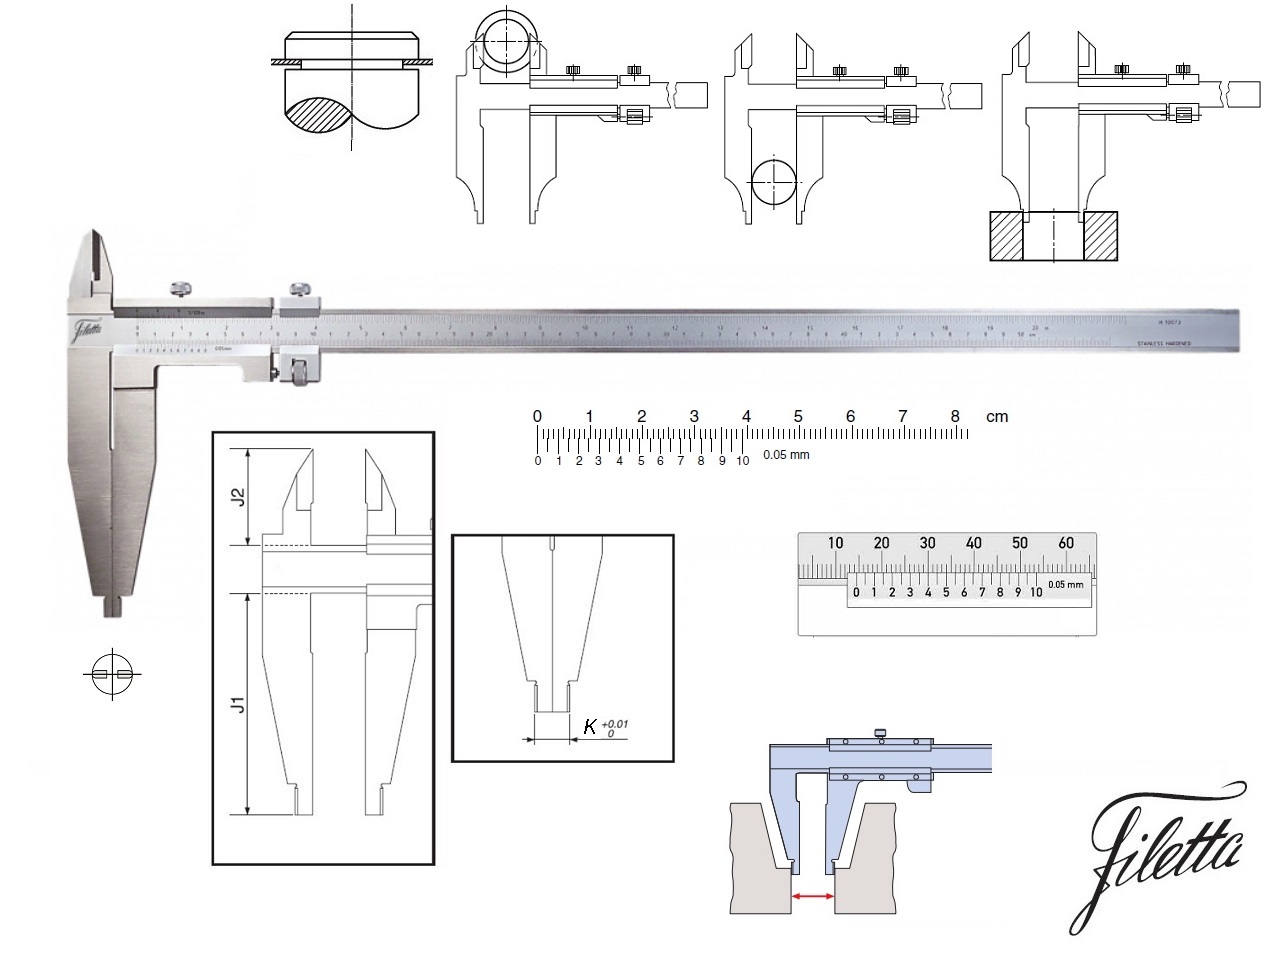 Posuvné měřítko Filetta 0-2000 mm, čelisti 200 mm, s měřicími nožíky pro vnější měření